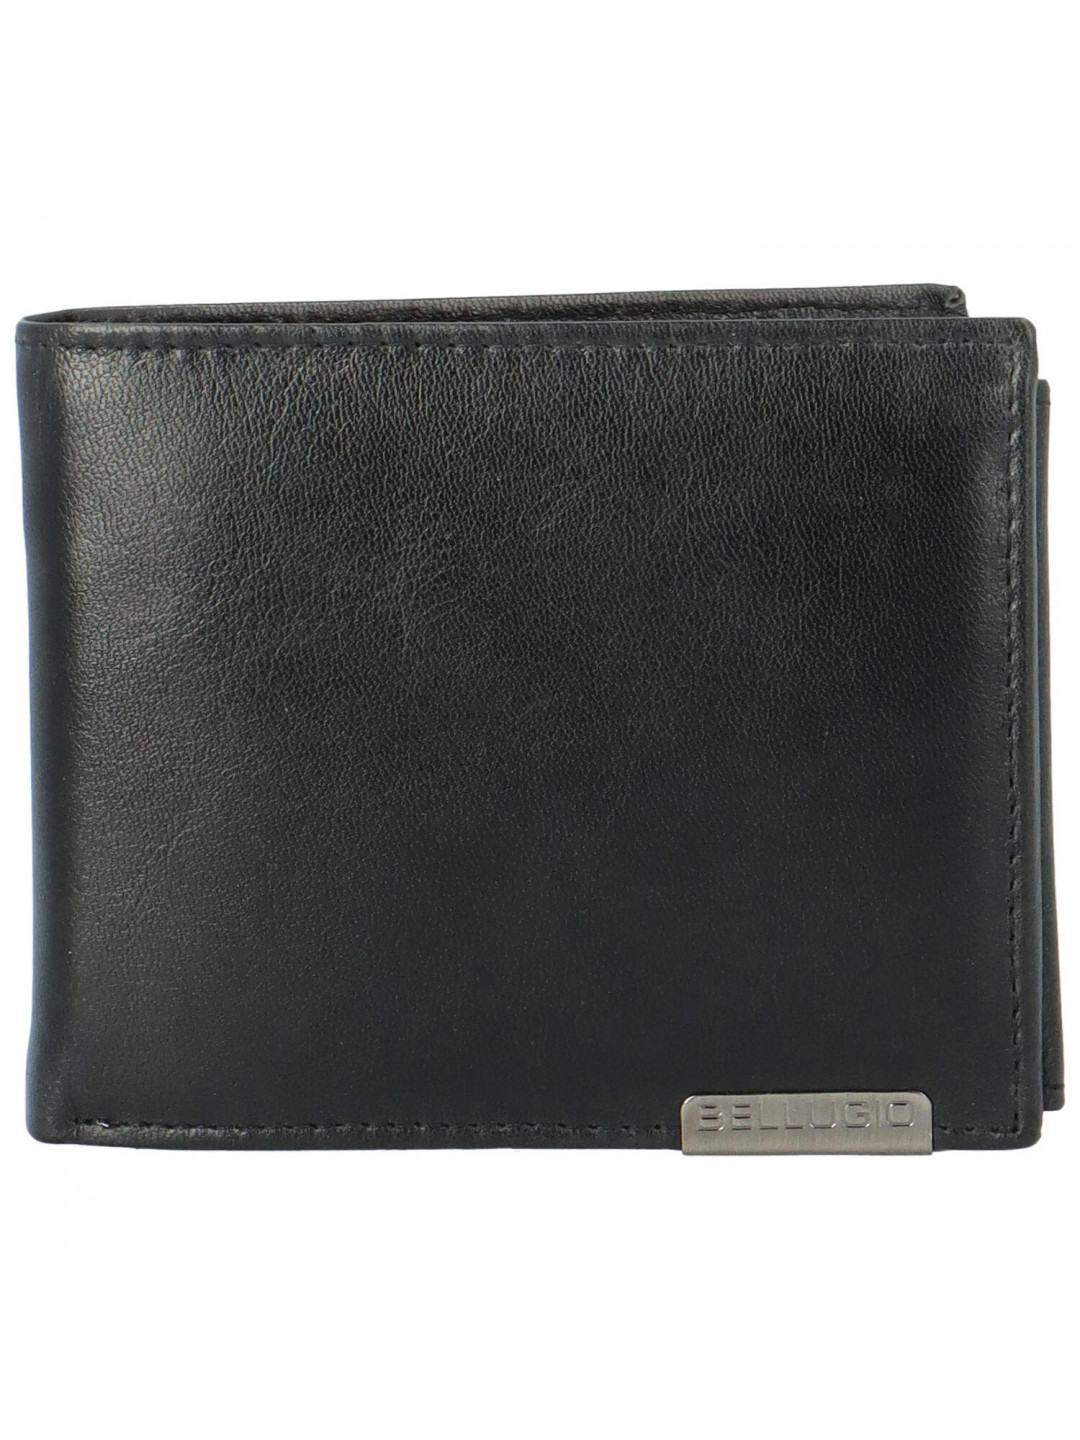 Pánská kožená peněženka černá – Bellugio Stendorff